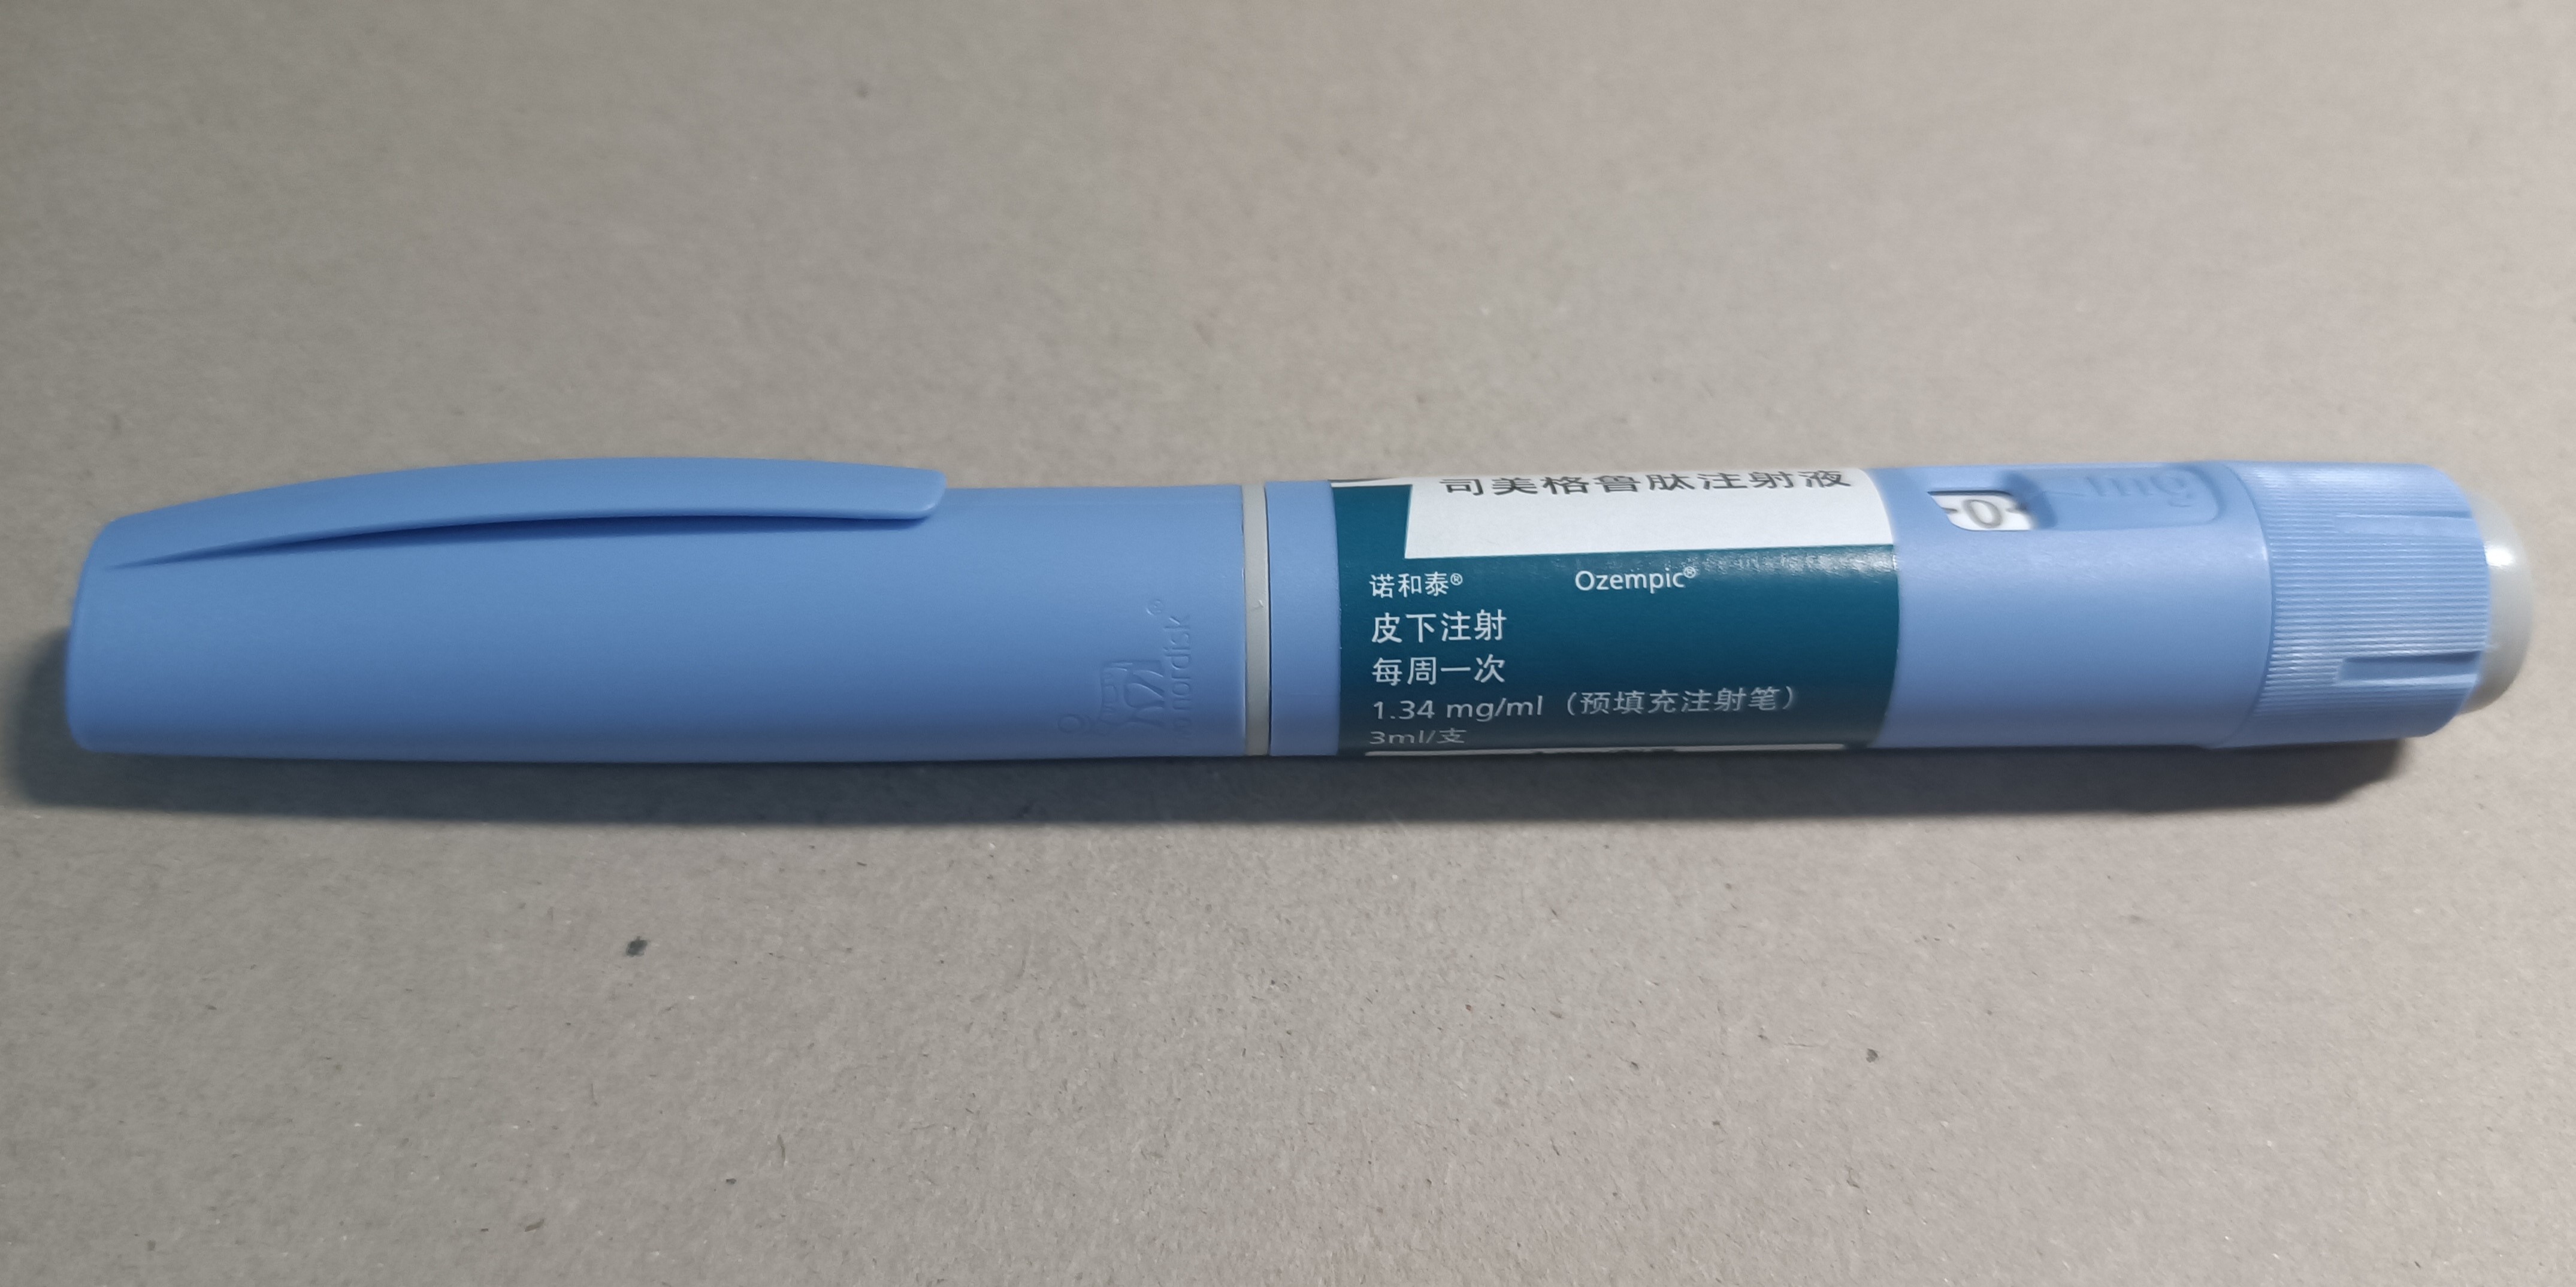 Ozempic: stilouri injectoare falsificate, în circulație în Europa